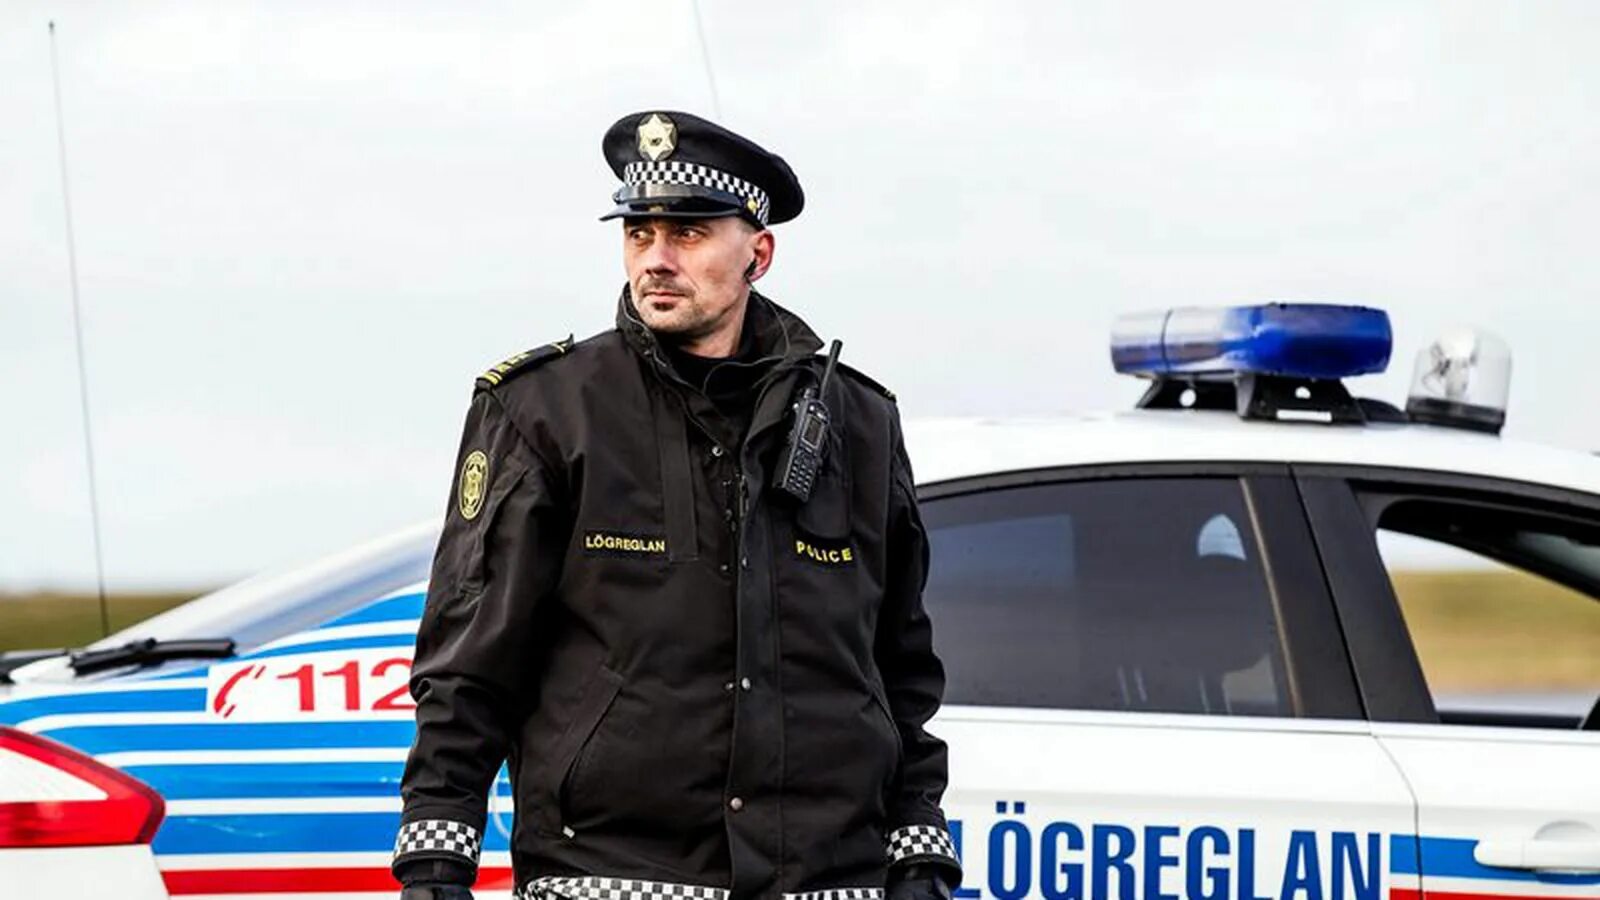 Безопасность финляндии. Полиция Исландии. Форма полиции Исландии. Форма полиции Финляндии. Полиция Финляндии.